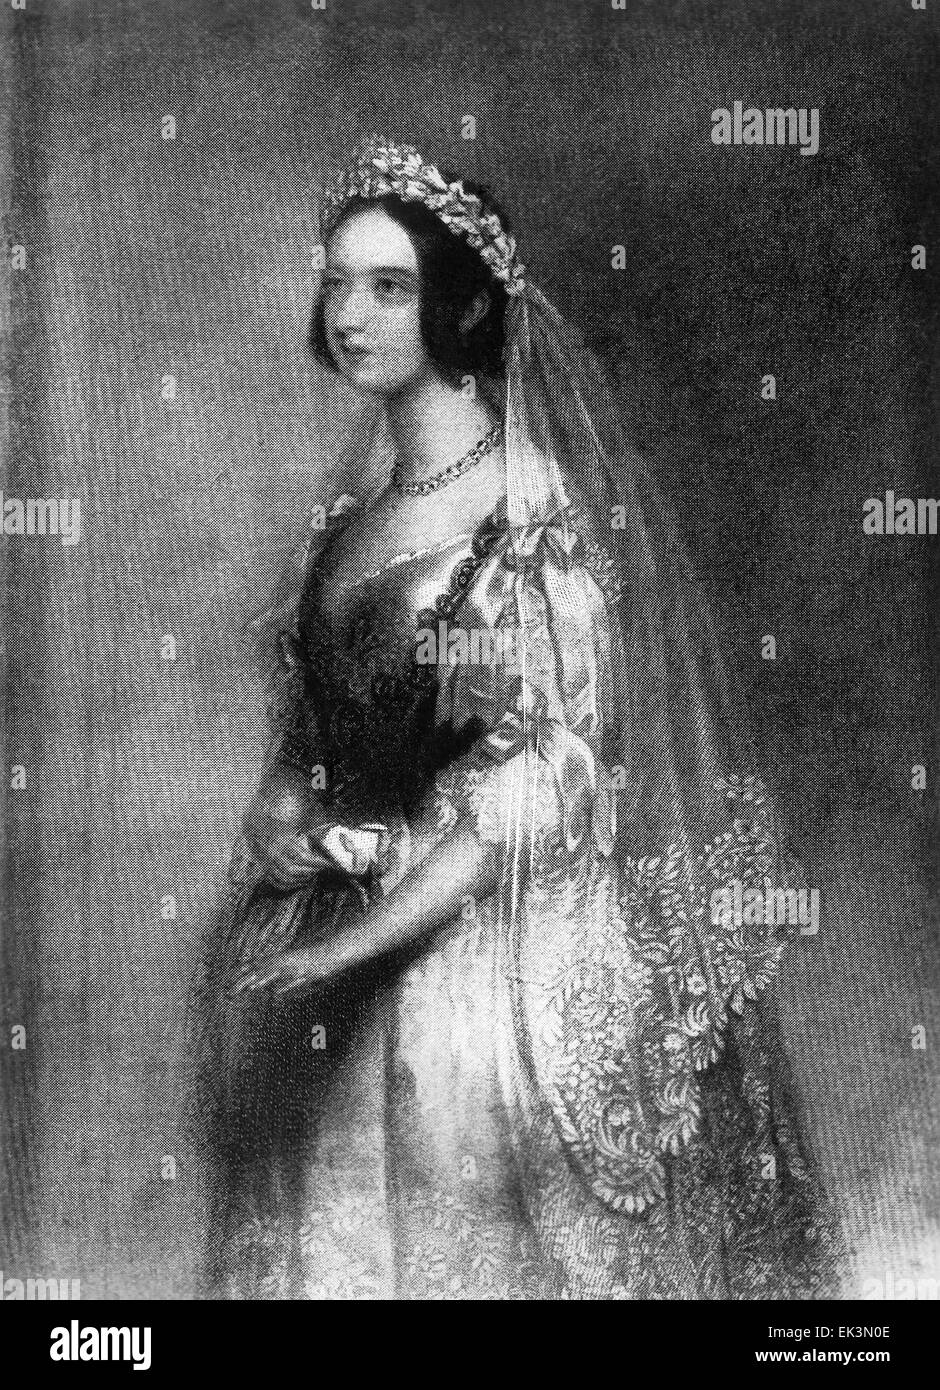 La reine Victoria, du Royaume-Uni, Portrait en robe nuptiale, 1840 Banque D'Images